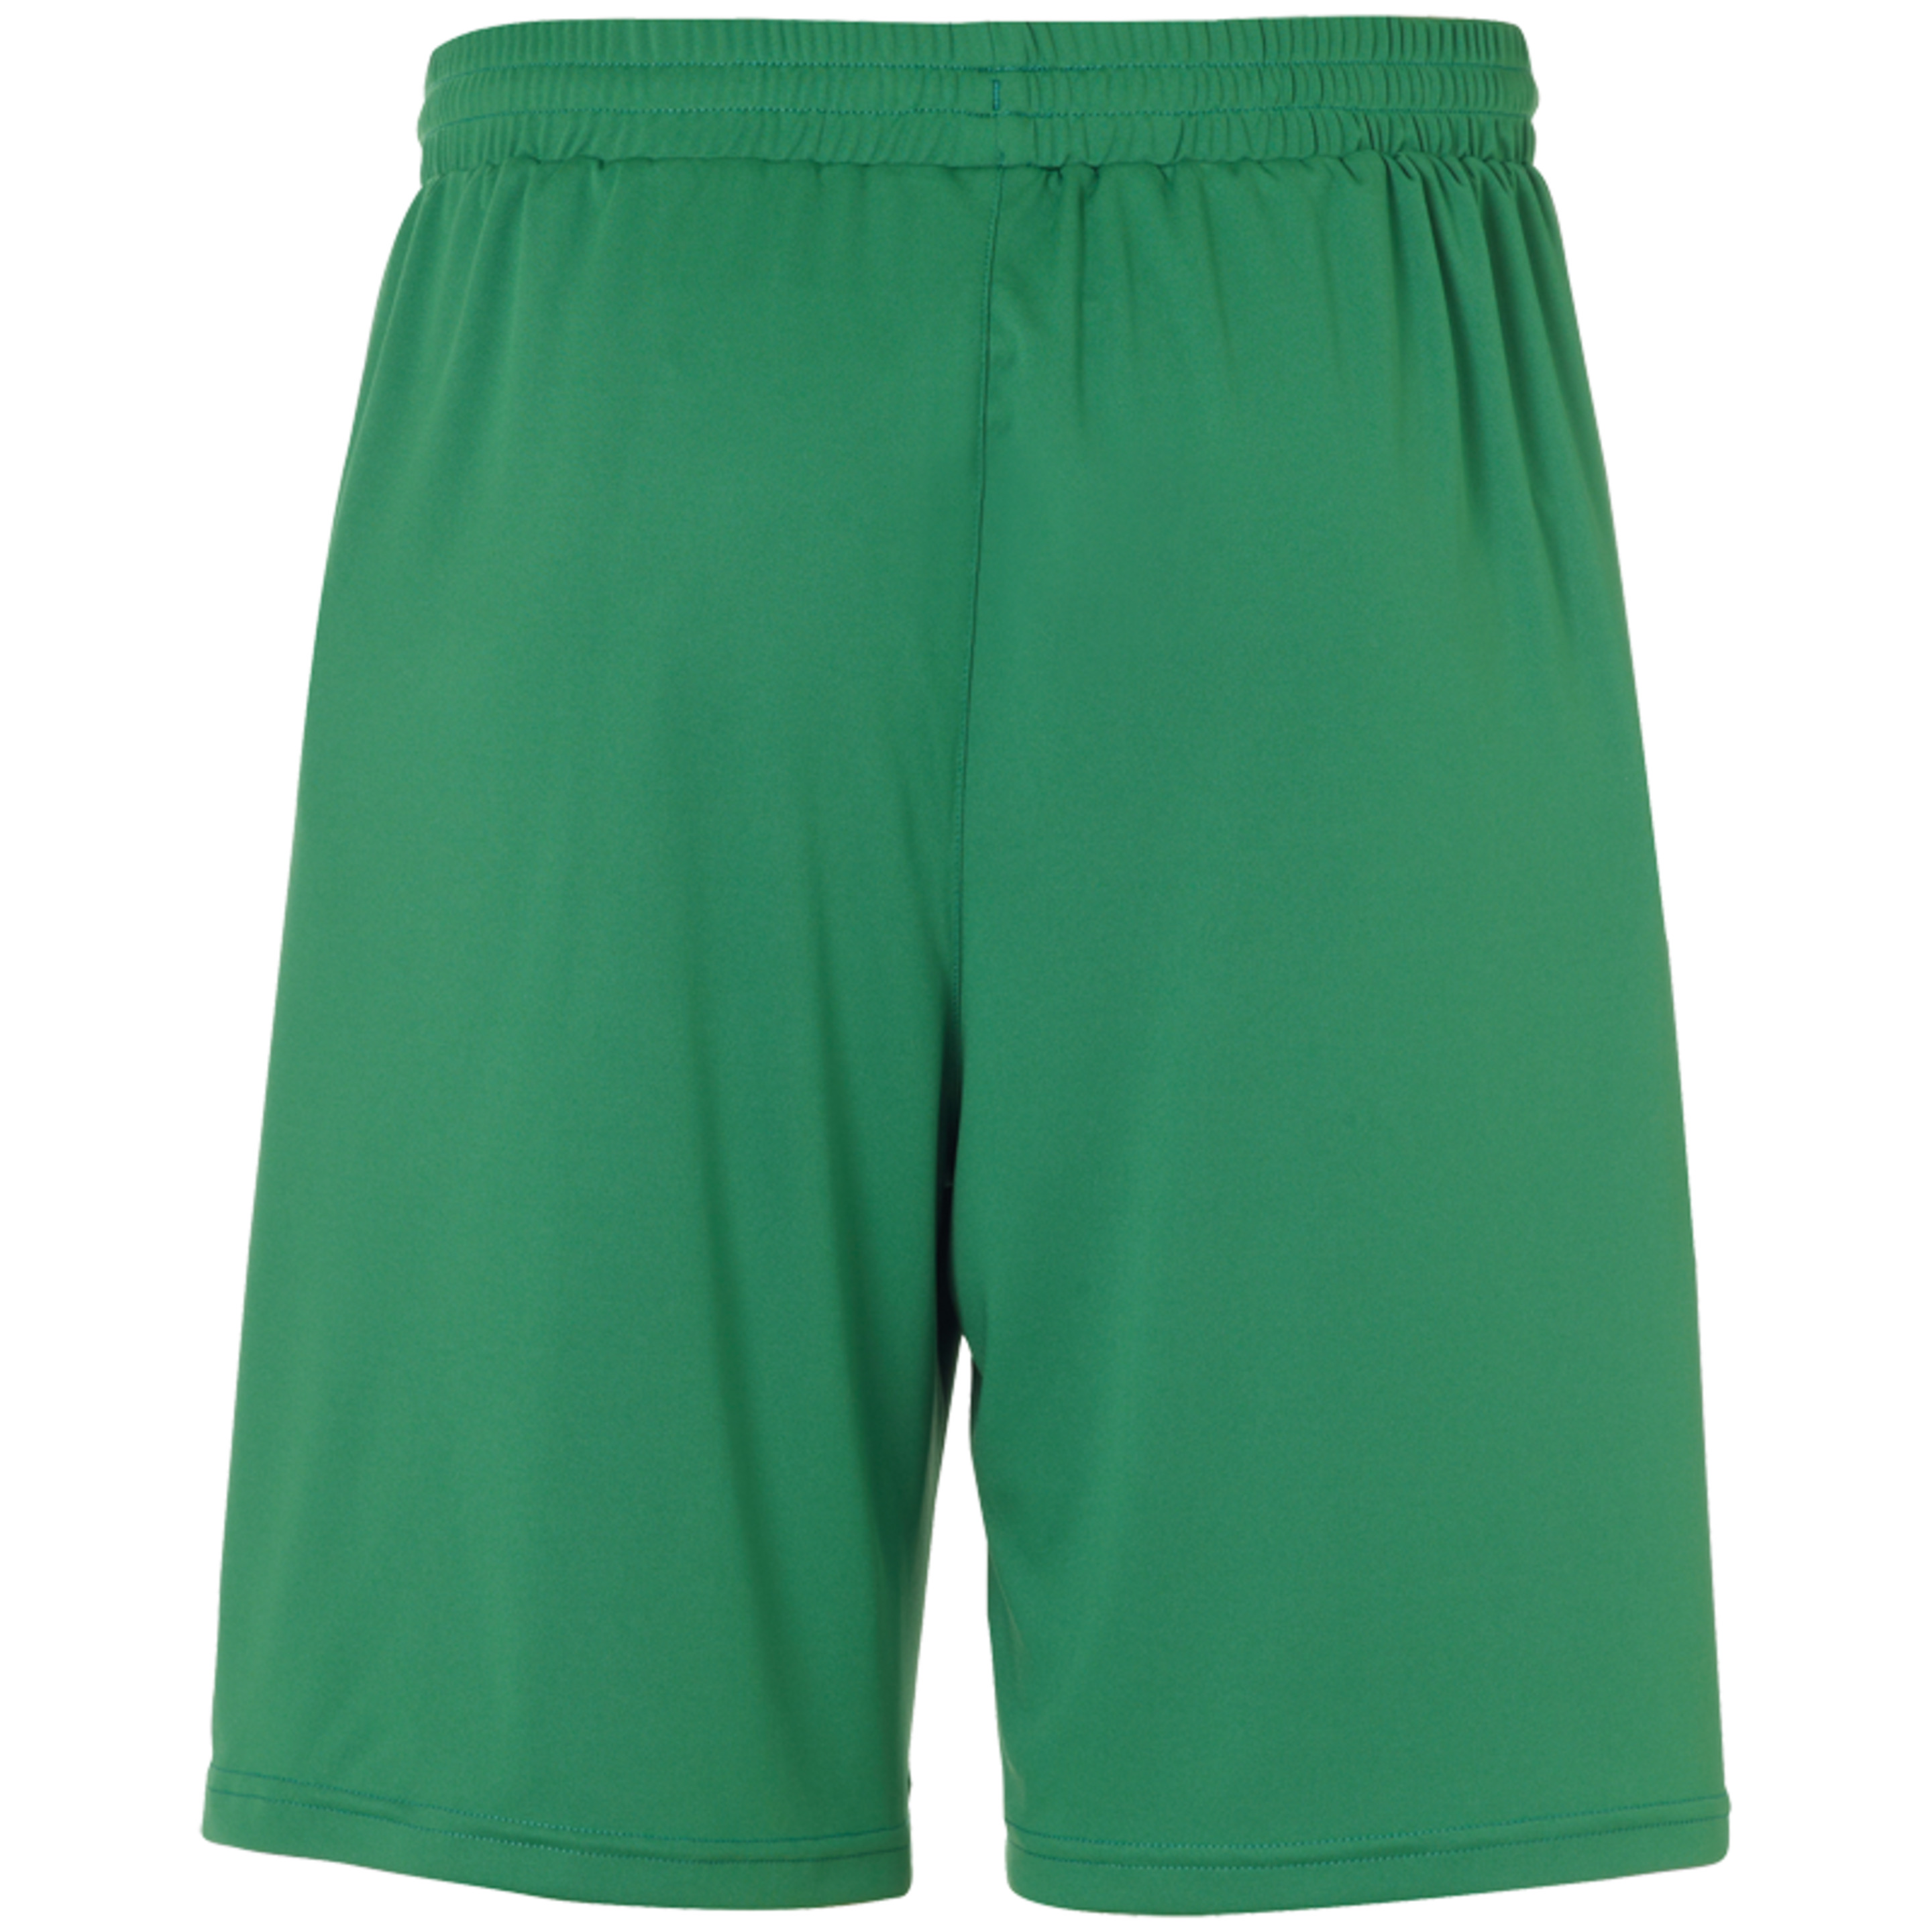 Center Basic Shorts Without Slip Verde/blanco Uhlsport - blanco_verde - Center Basic Shorts Without Slip Verde/blanco Uhlsport  MKP